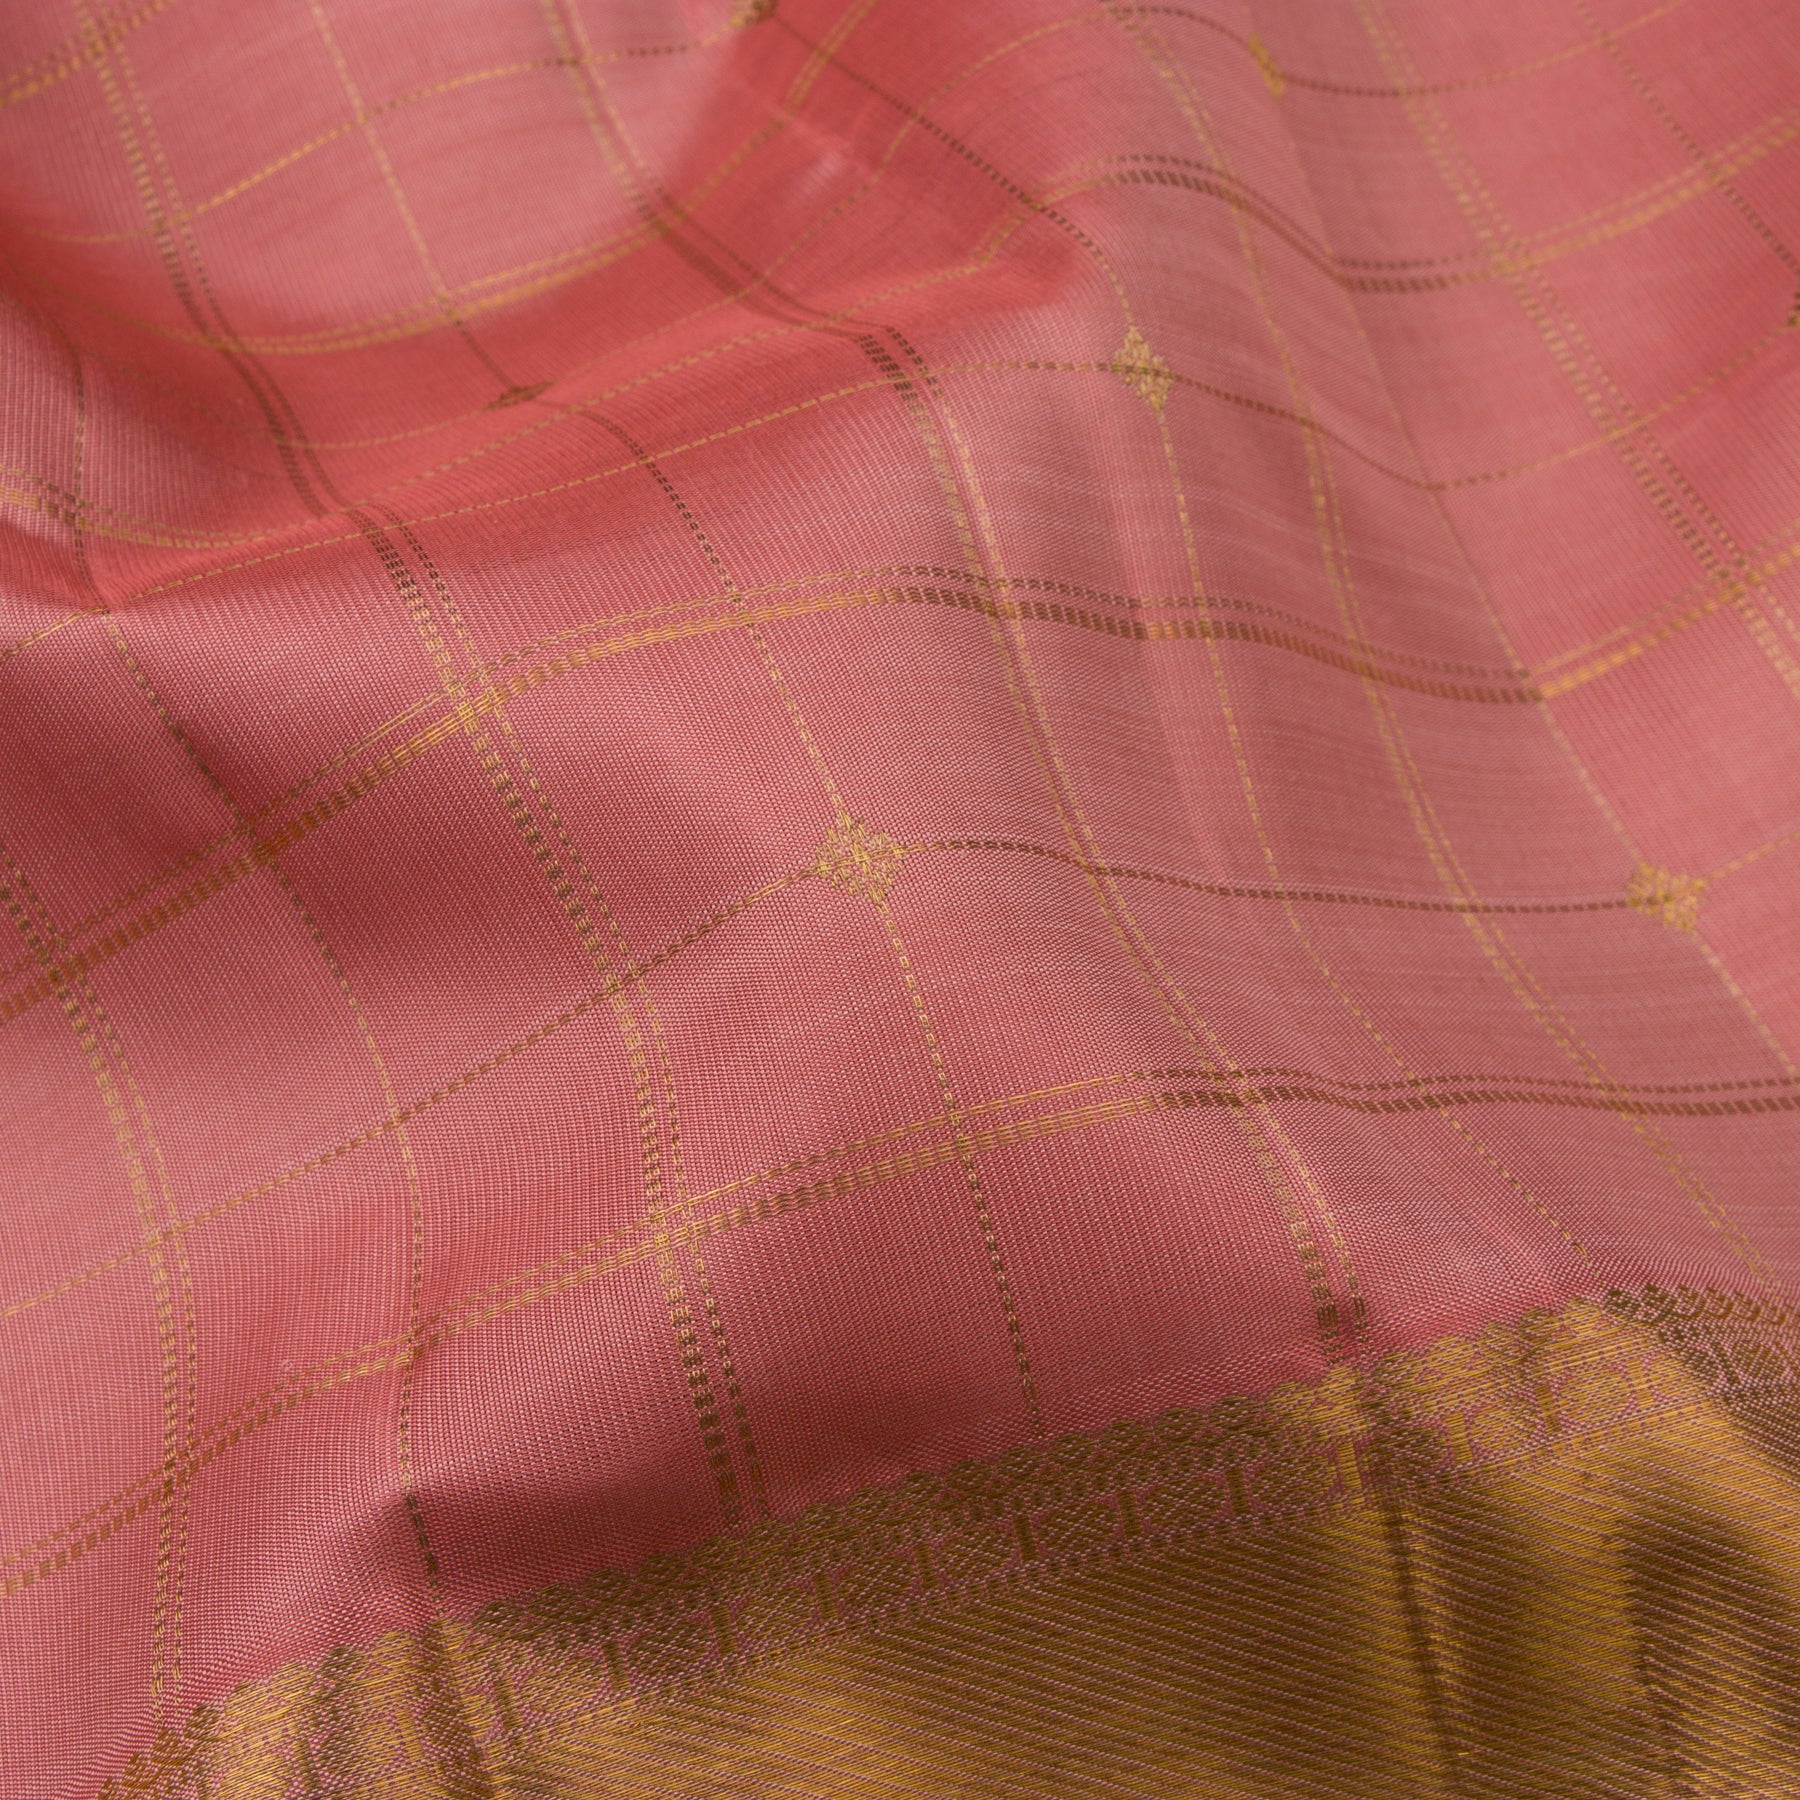 Kanakavalli Kanjivaram Silk Sari 23-595-HS001-03721 - Fabric View